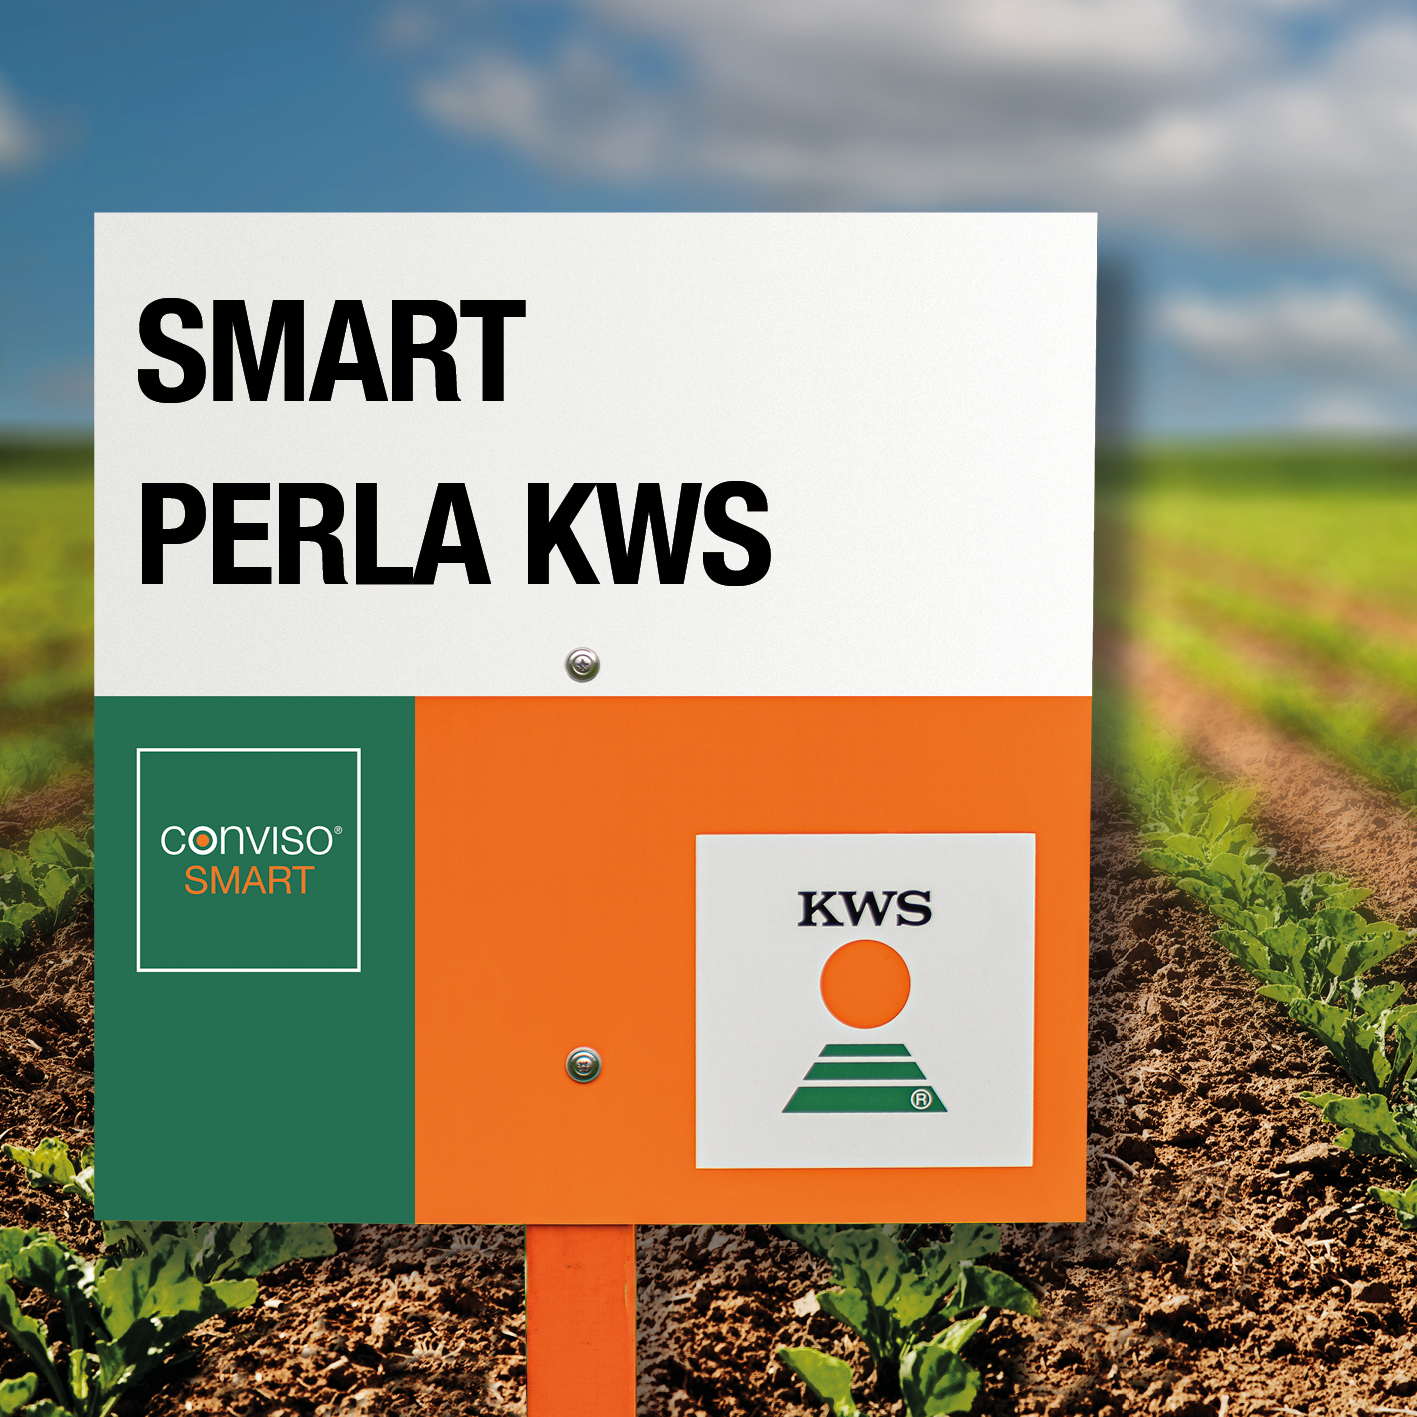 SMART-PERLA-KWS.jpg